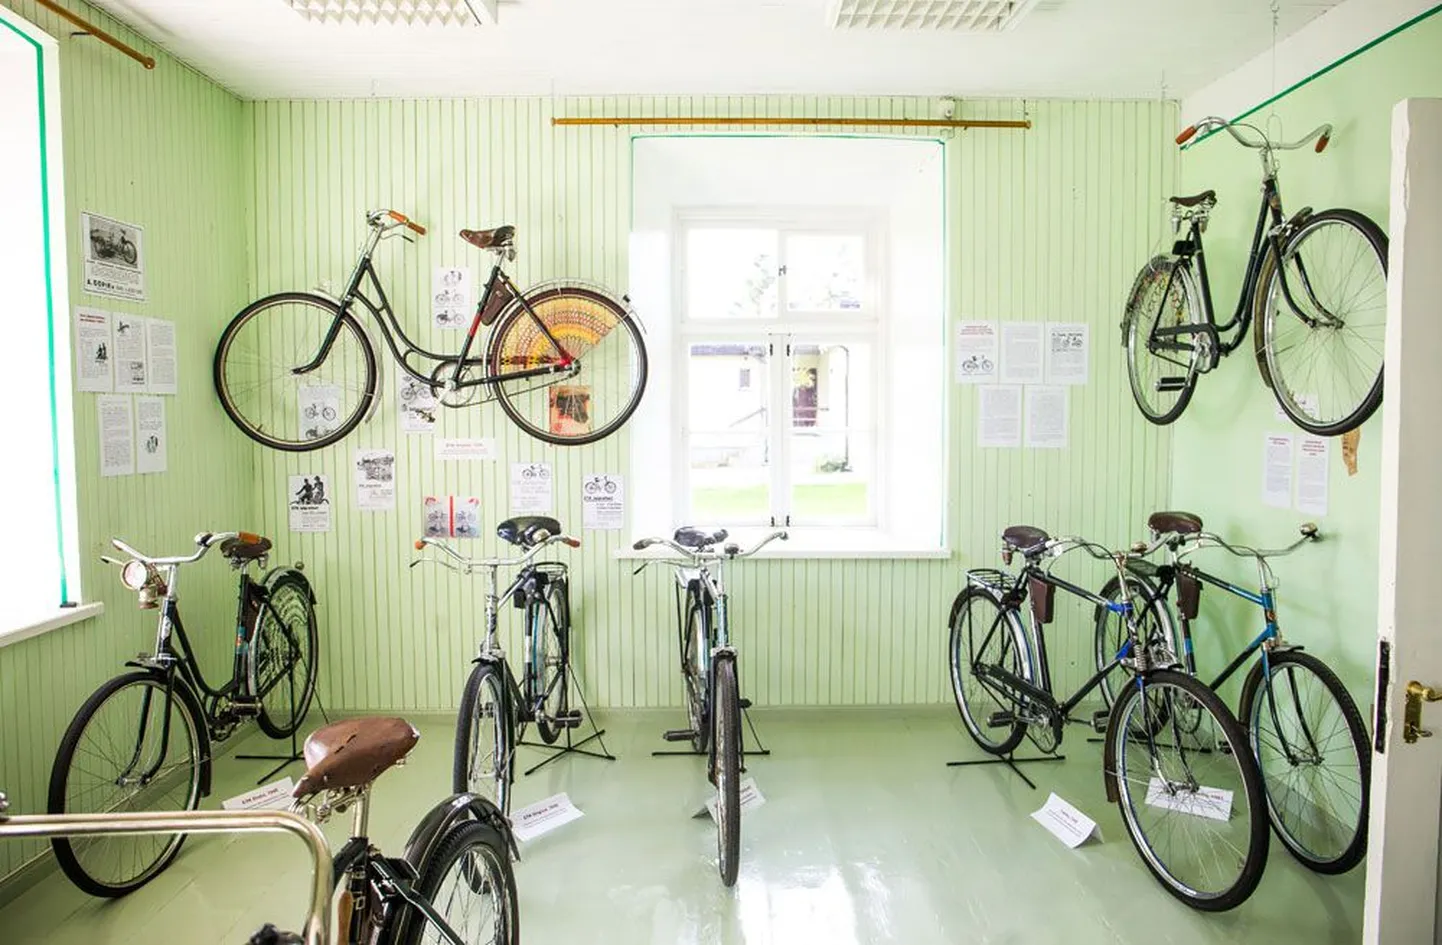 В музее представлено 37 велосипедов, в будущем экспозиция увеличится.